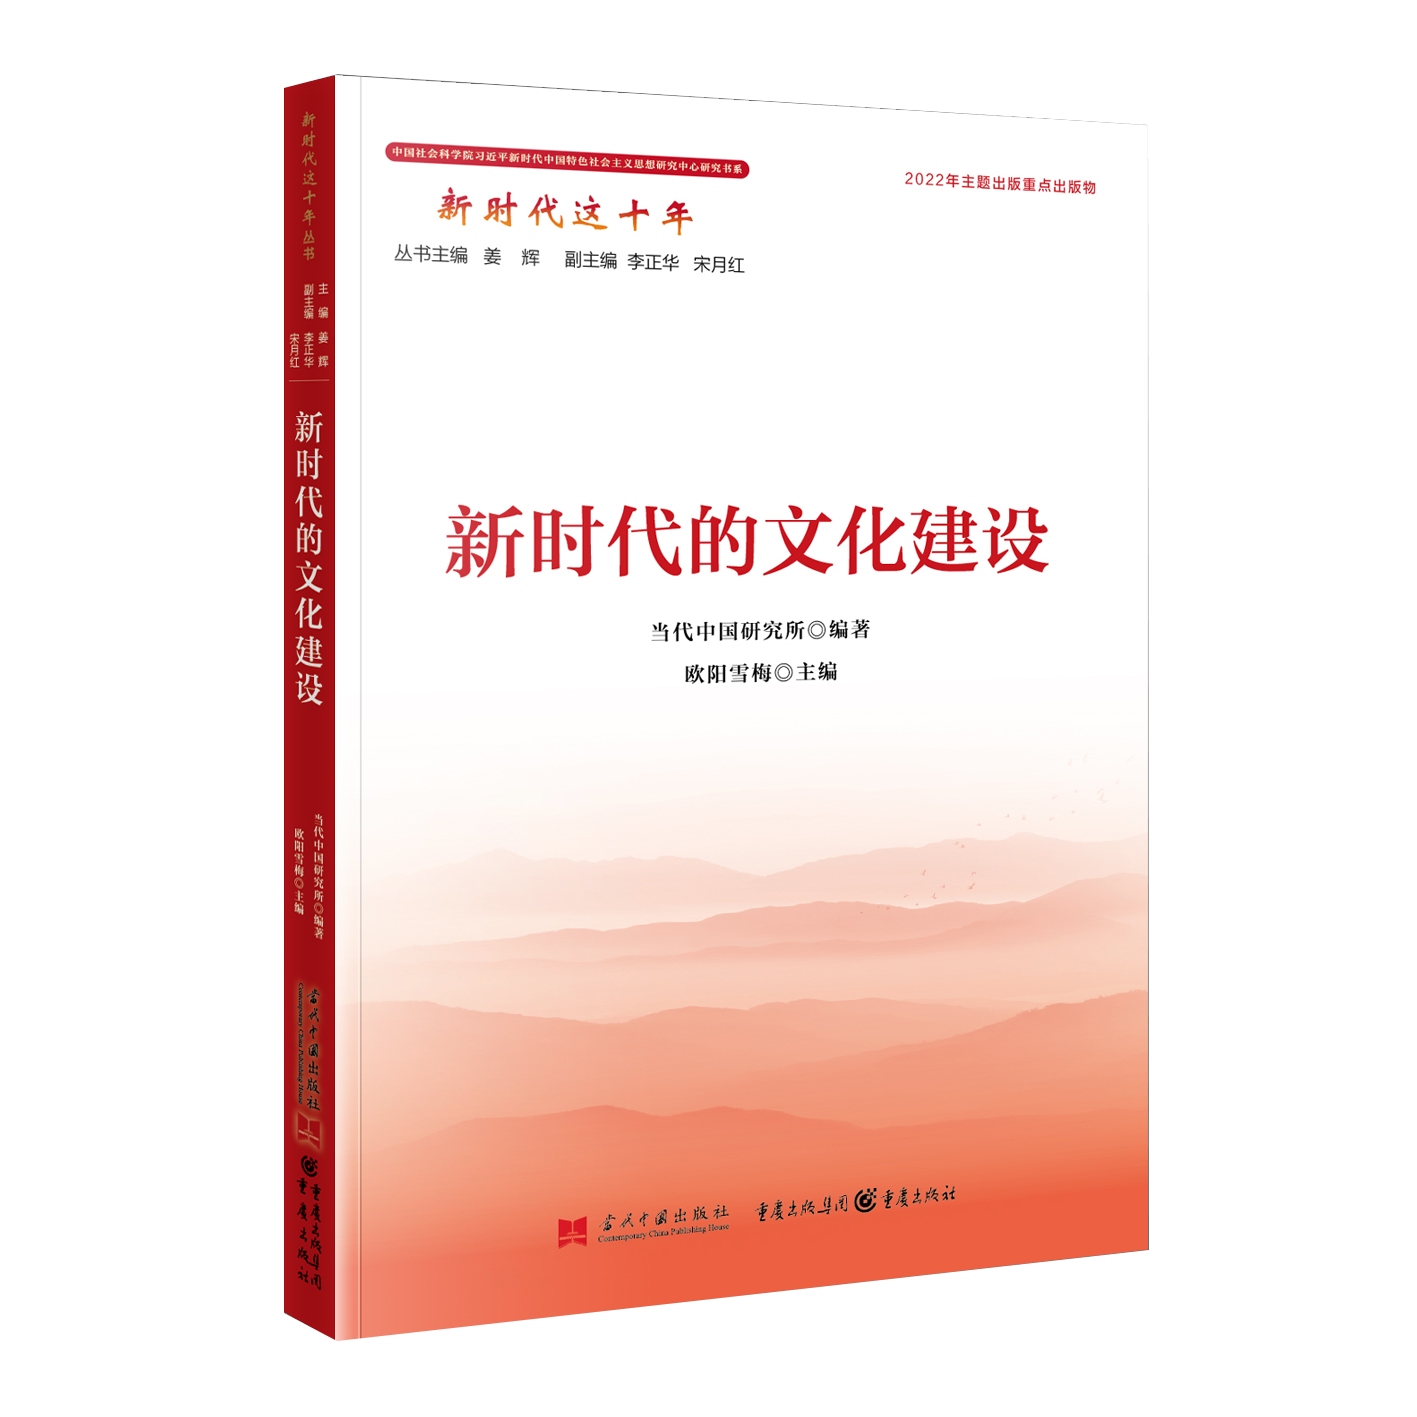 正版2022新书 新时代的文化建设 新时代这十年系列丛书 当代中国研究所 编著 当代中国出版社9787515412092